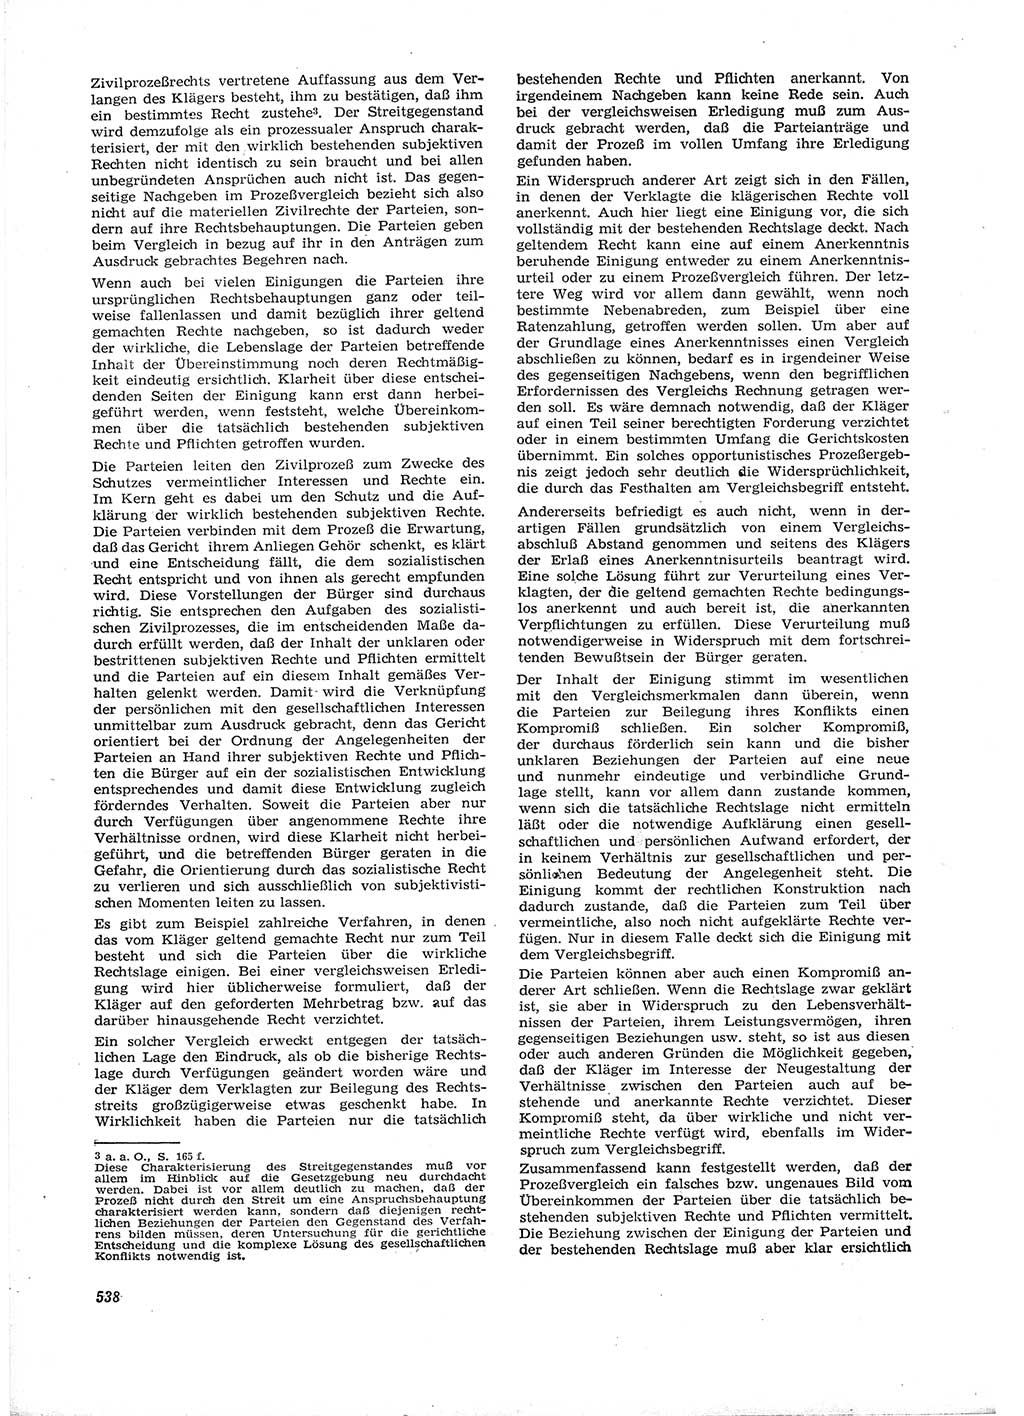 Neue Justiz (NJ), Zeitschrift für Recht und Rechtswissenschaft [Deutsche Demokratische Republik (DDR)], 16. Jahrgang 1962, Seite 538 (NJ DDR 1962, S. 538)